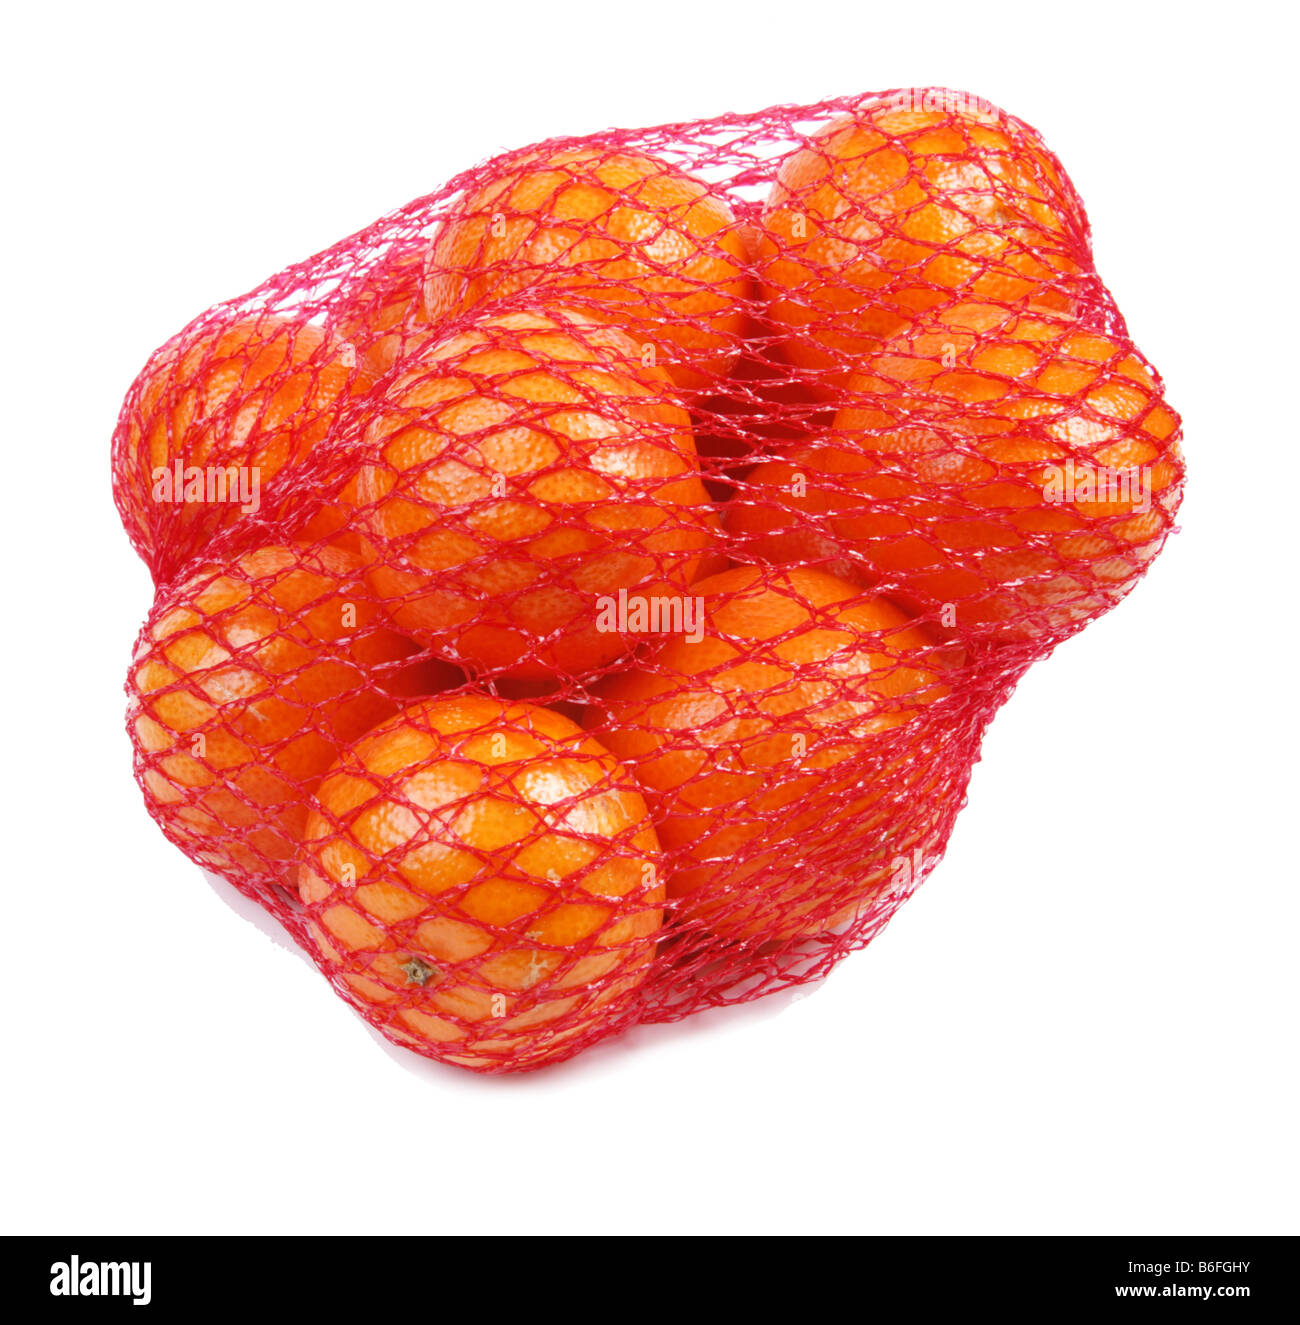 Al netto del supermercato hanno acquistato le clementine Foto Stock